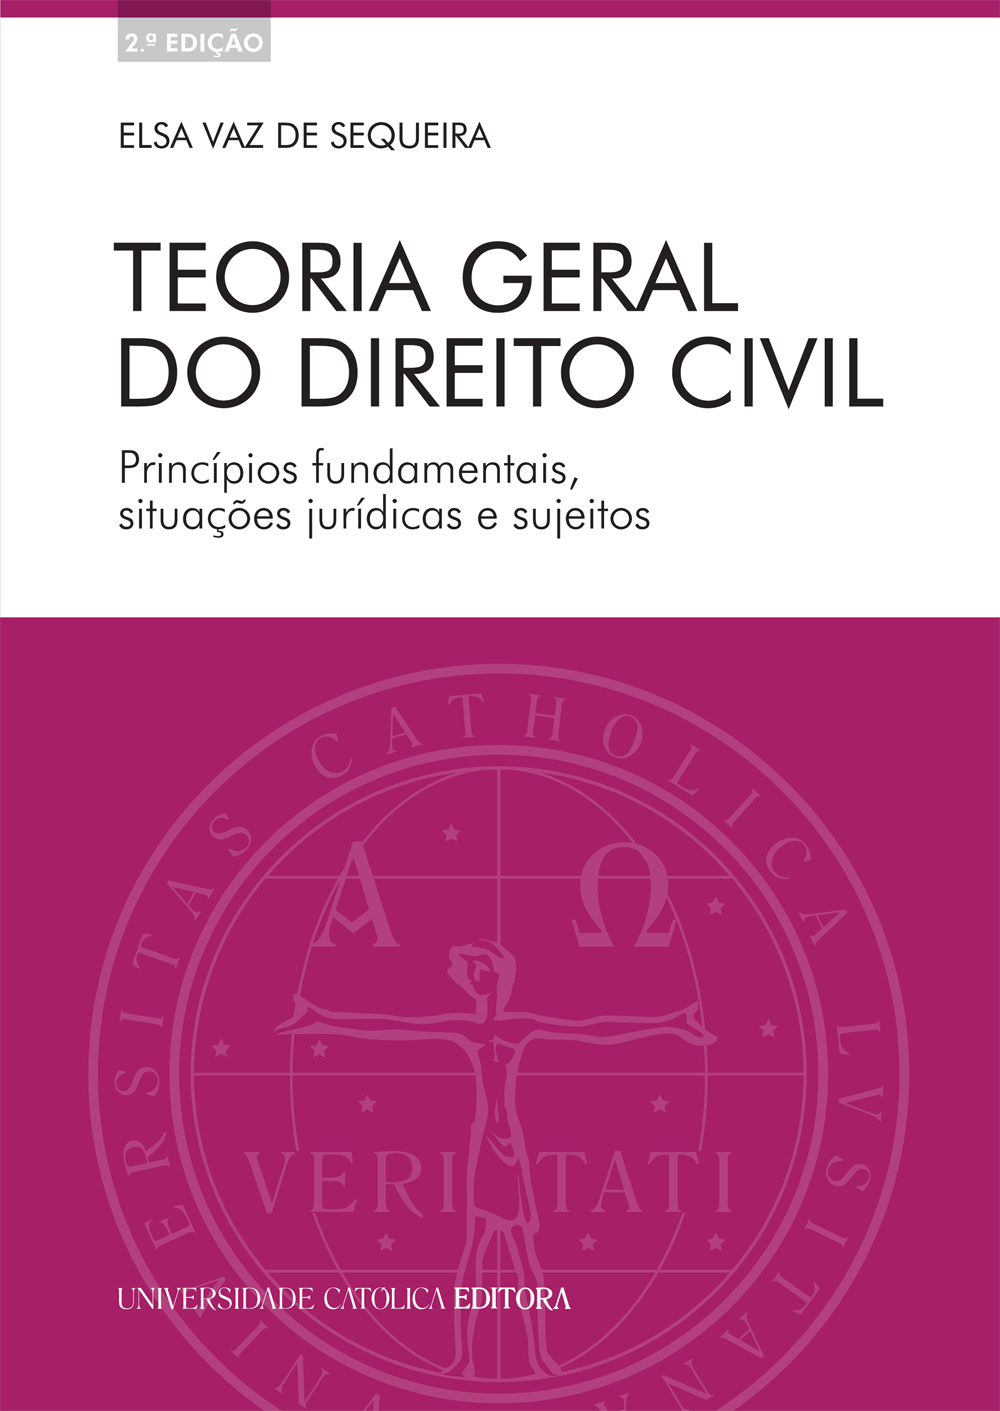 TEORIA GERAL DO DIREITO CIVIL - Universidade Católica Editora 